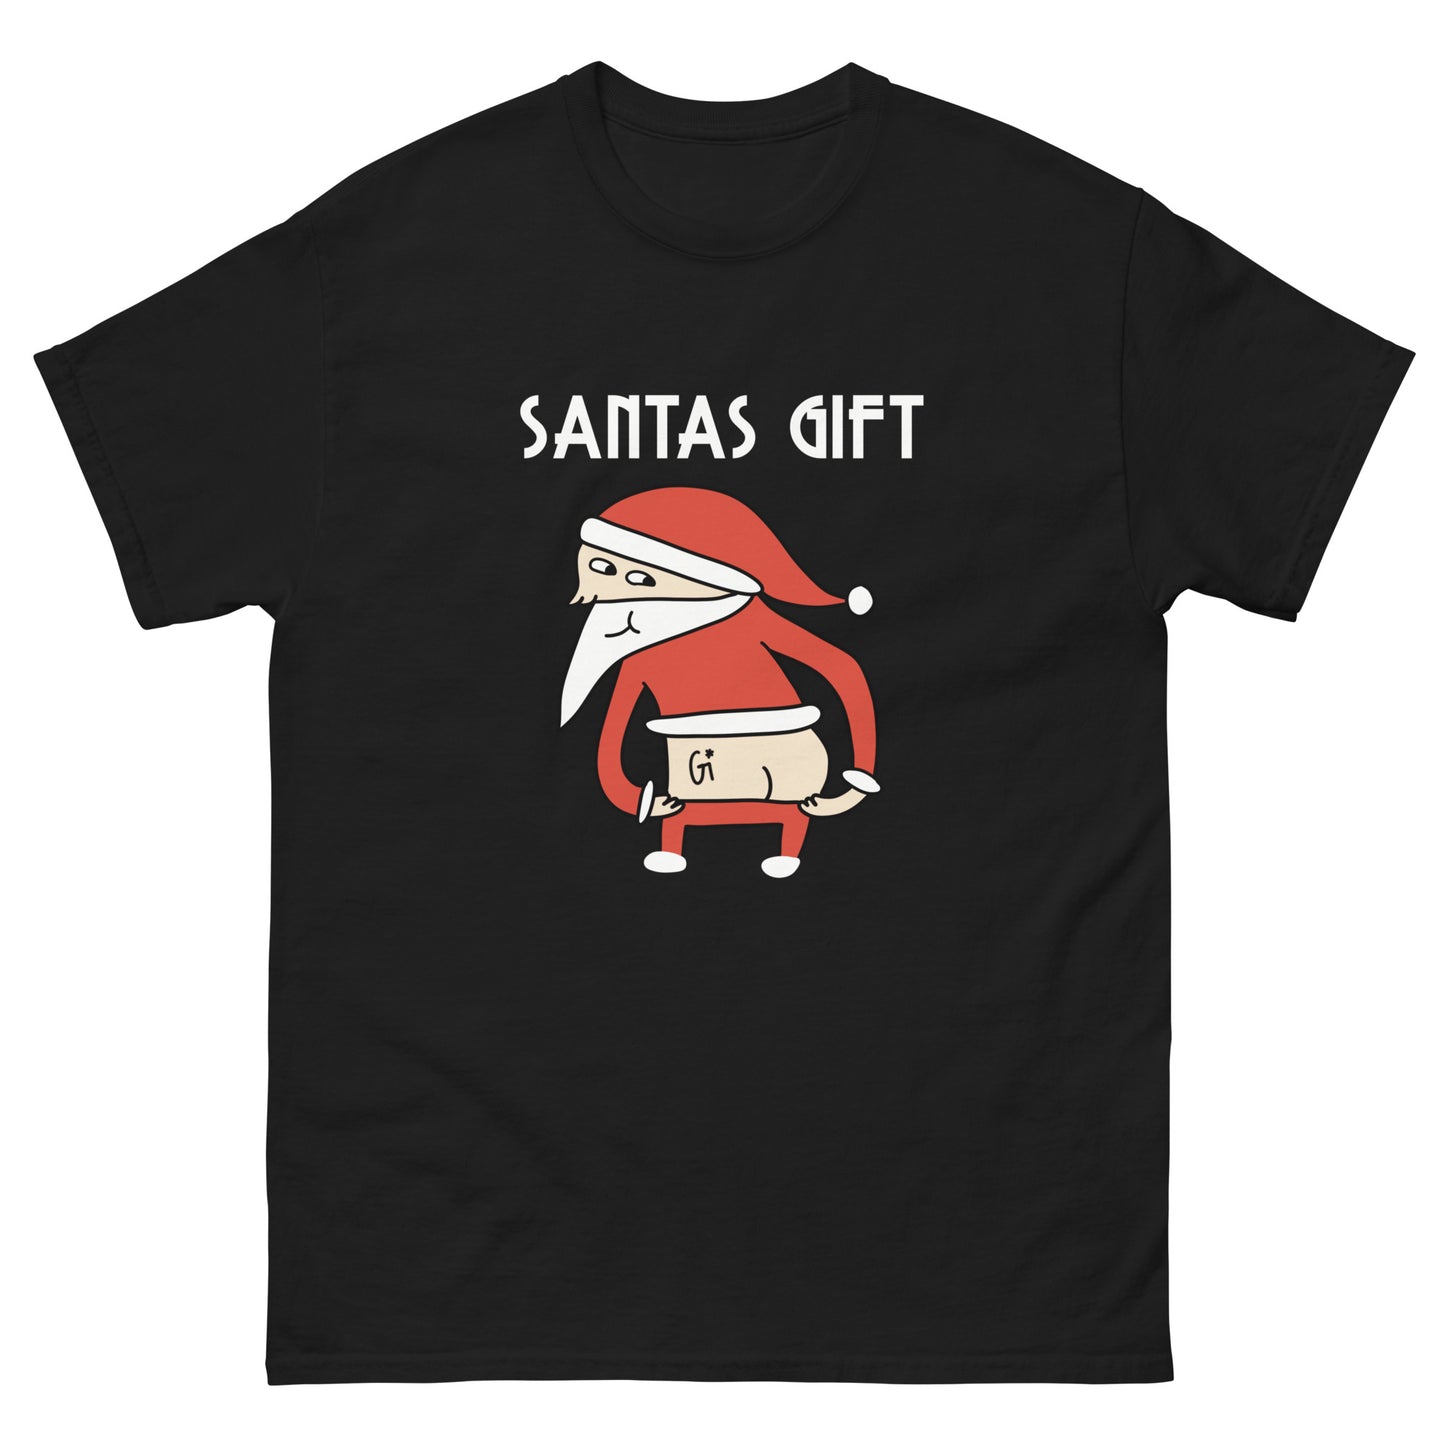 black color cotton t shirt with Santa's ass